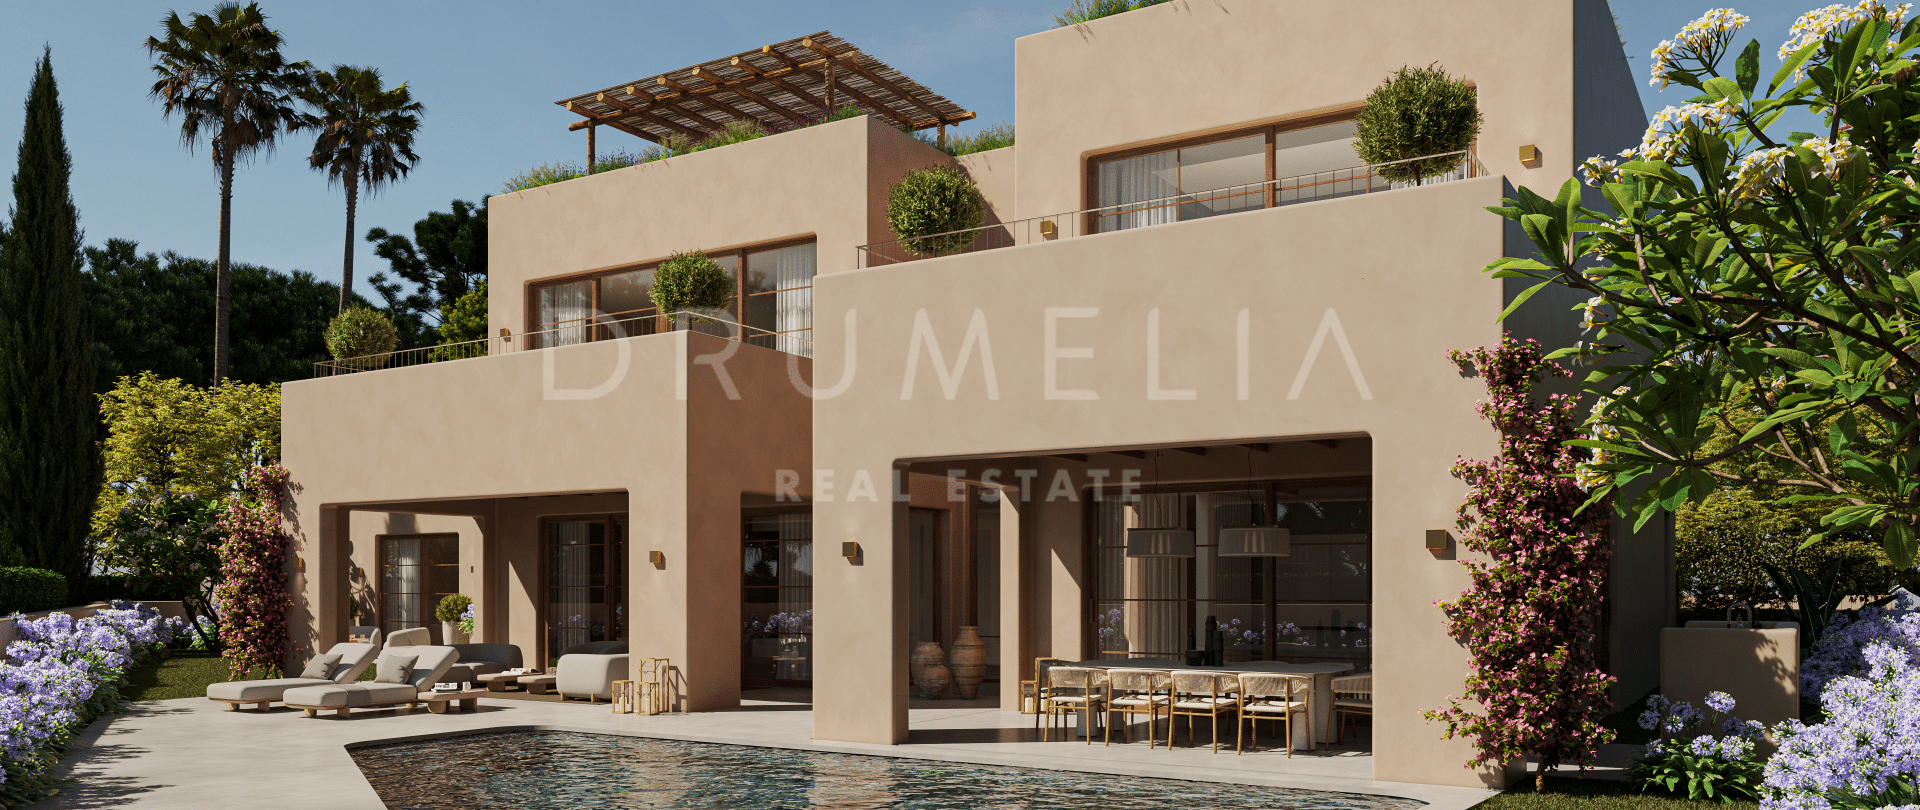 Excepcional parcela y proyecto de villa arquitectónicamente único en Casa Blanca, Marbella